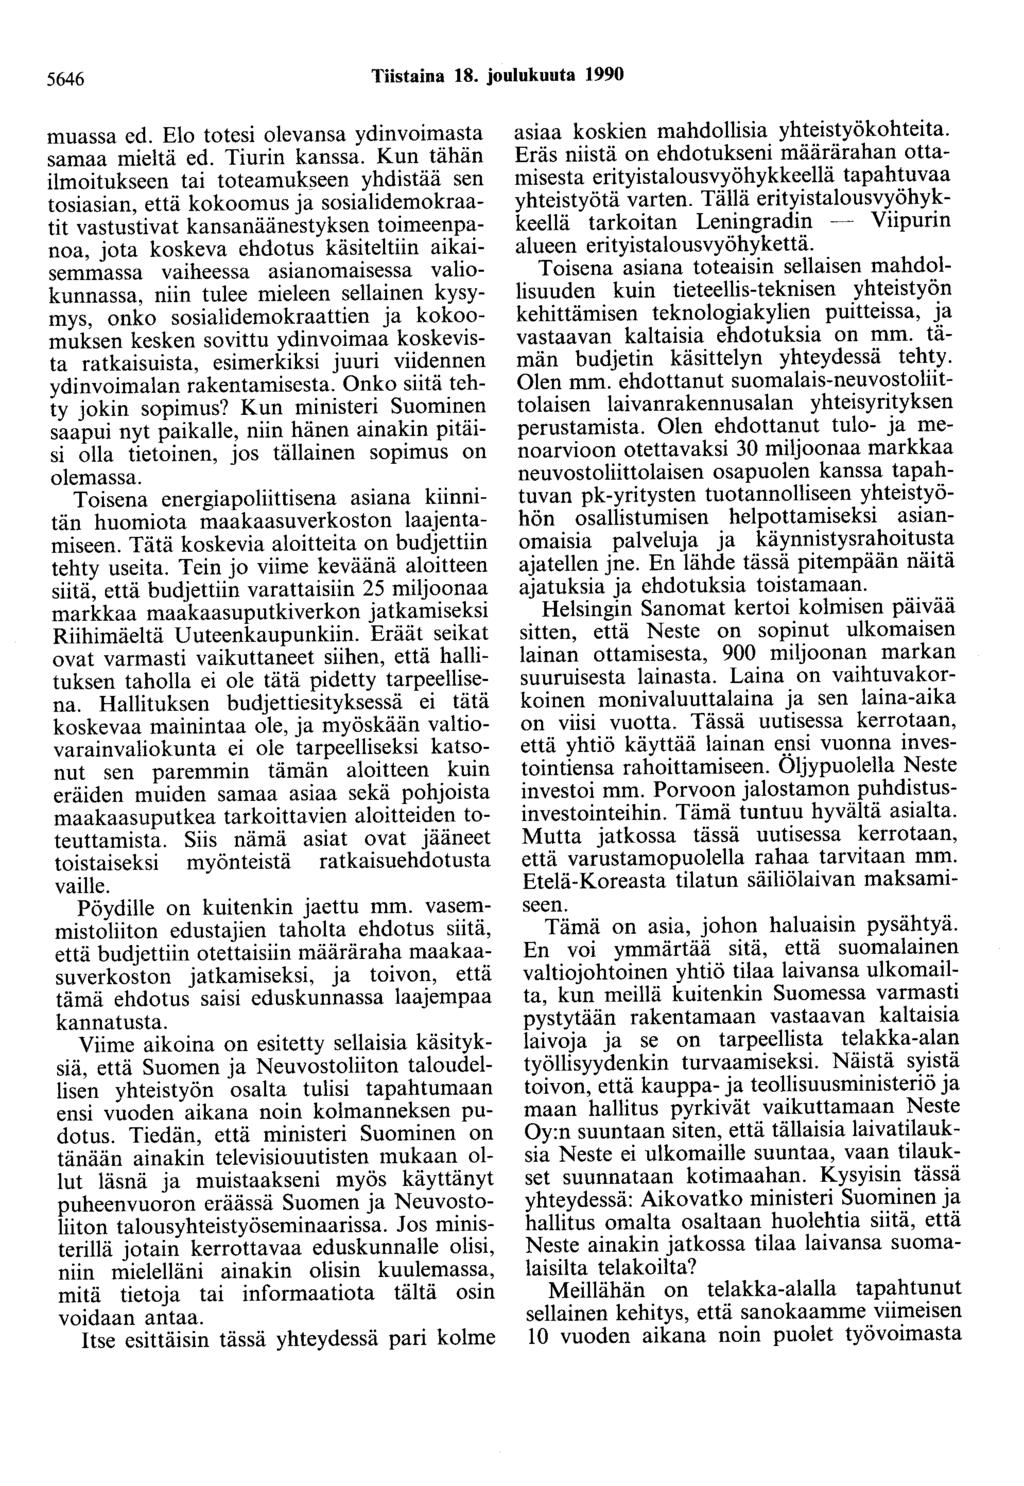 5646 Tiistaina 18. joulukuuta 1990 muassa ed. Elo totesi olevansa ydinvoimasta samaa mieltä ed. Tiurin kanssa.